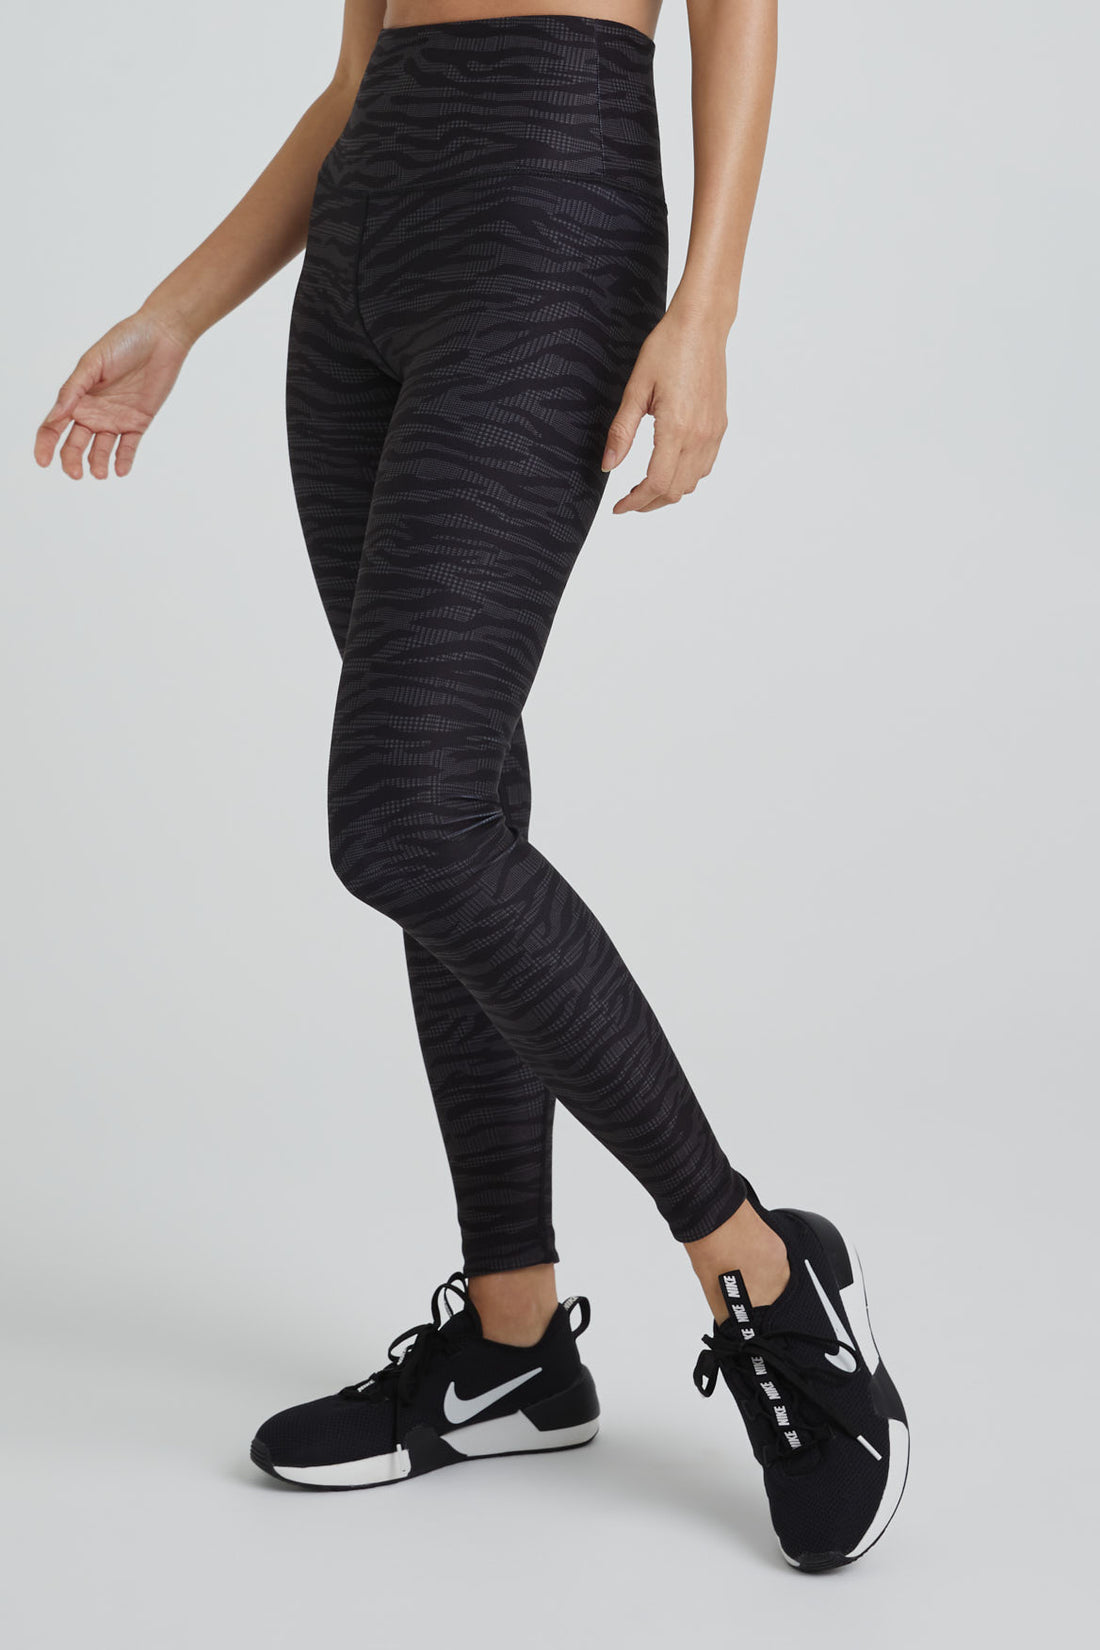 Black and White Zebra Print Leggings Women's Leggings High Waist Leggings  Colorful Leggings Patterned Leggings Gym Clothing -  Denmark